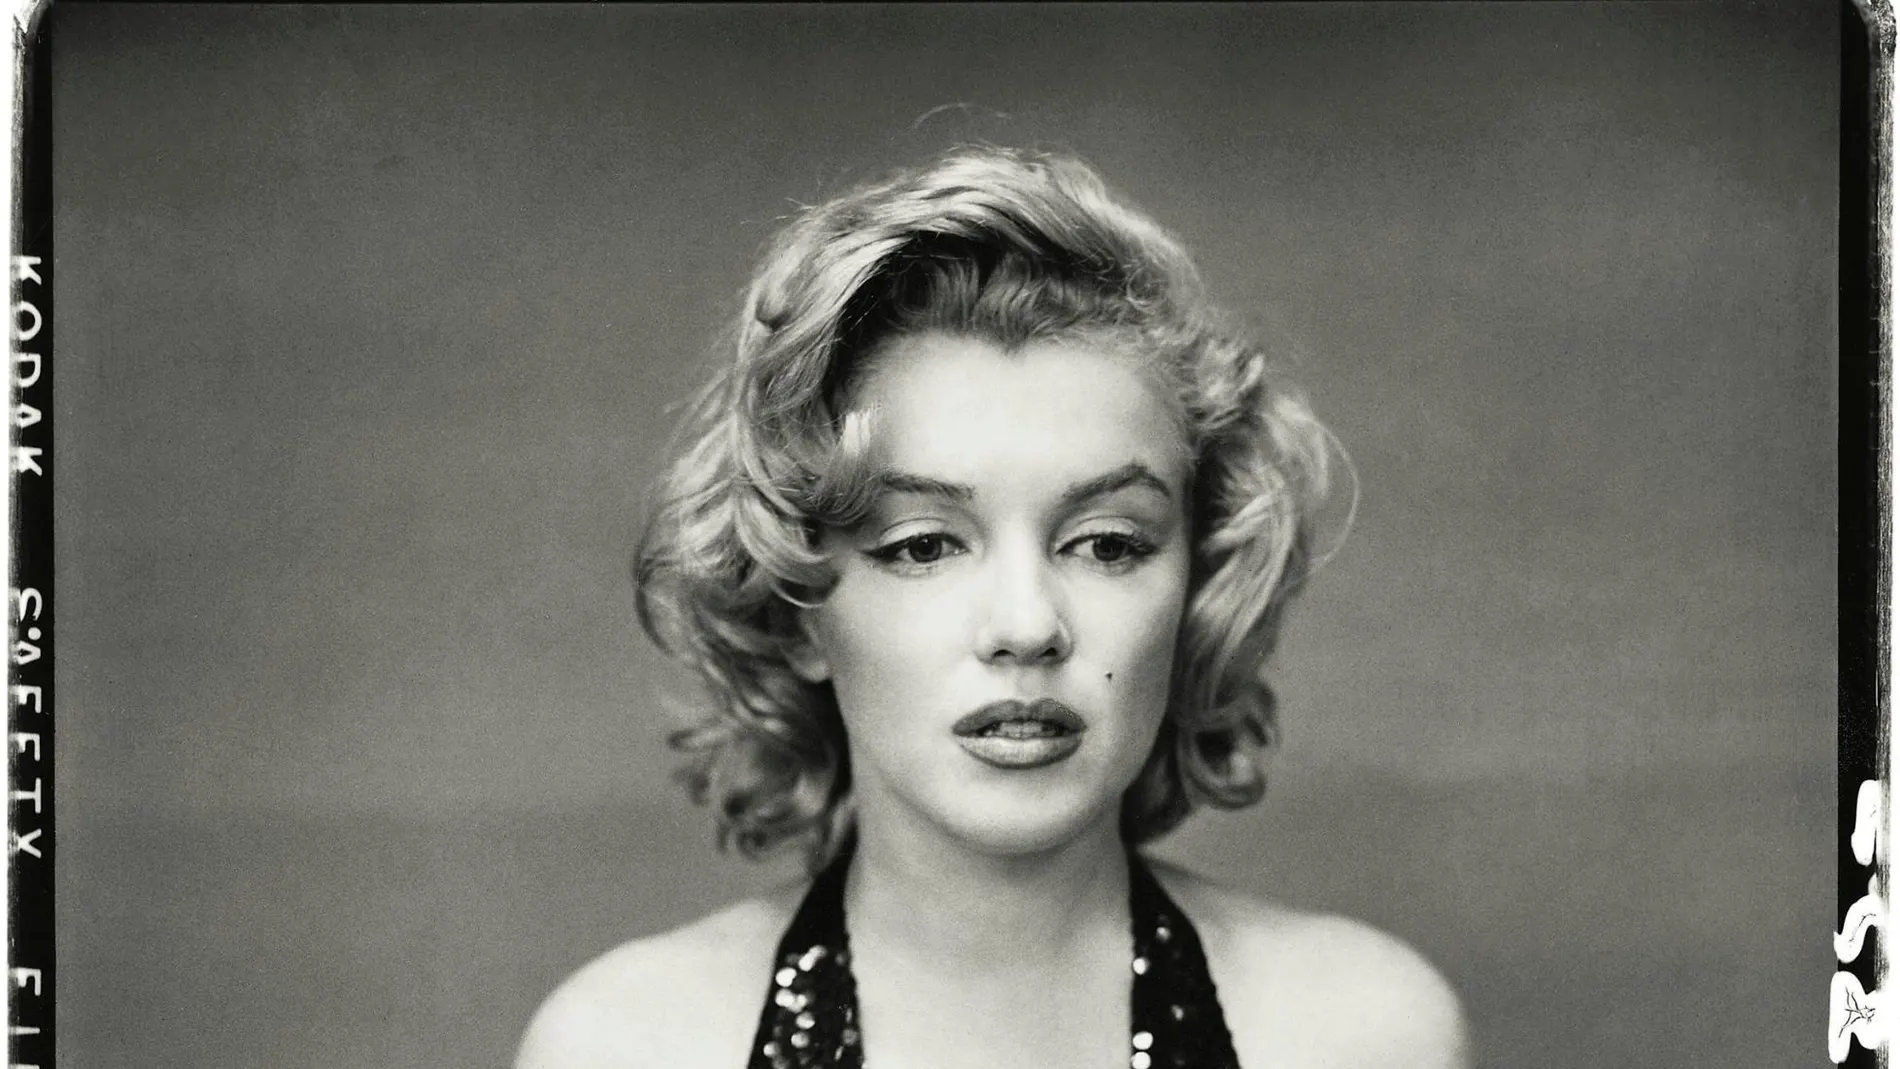 A Marilyn no le dio mucho tiempo para pensar en la posteridad. Seguramente hoy estaría espantada de la industria que se ha creado alrededor de su figura / Efe